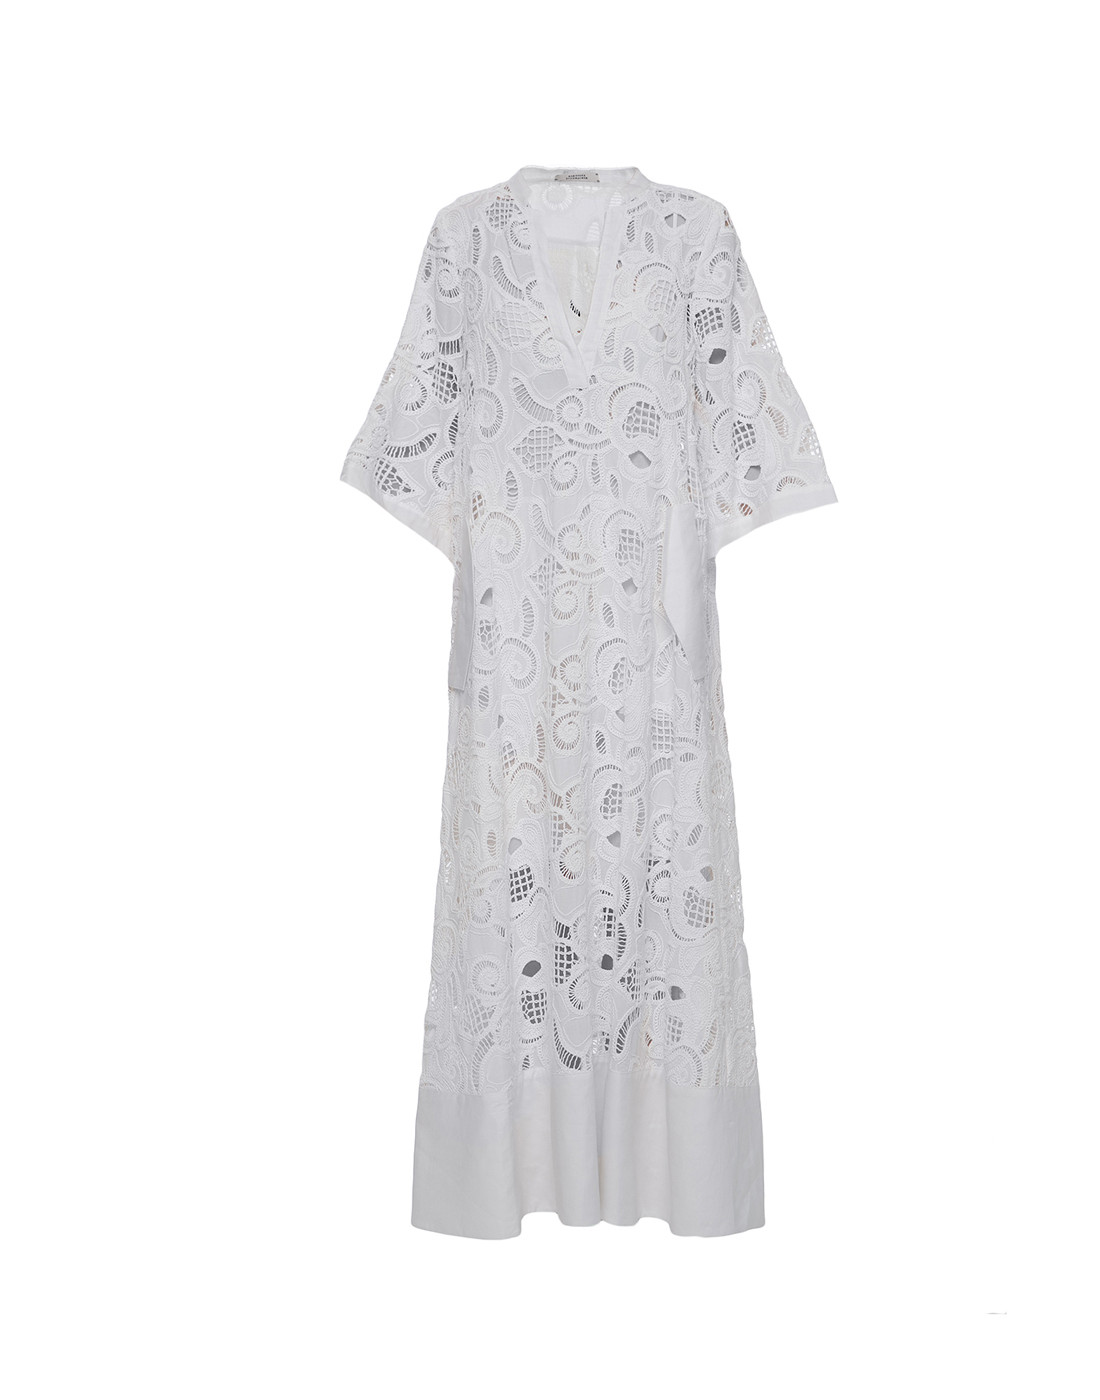 Платье белое женское Dorothee Schumacher S148705/110-1